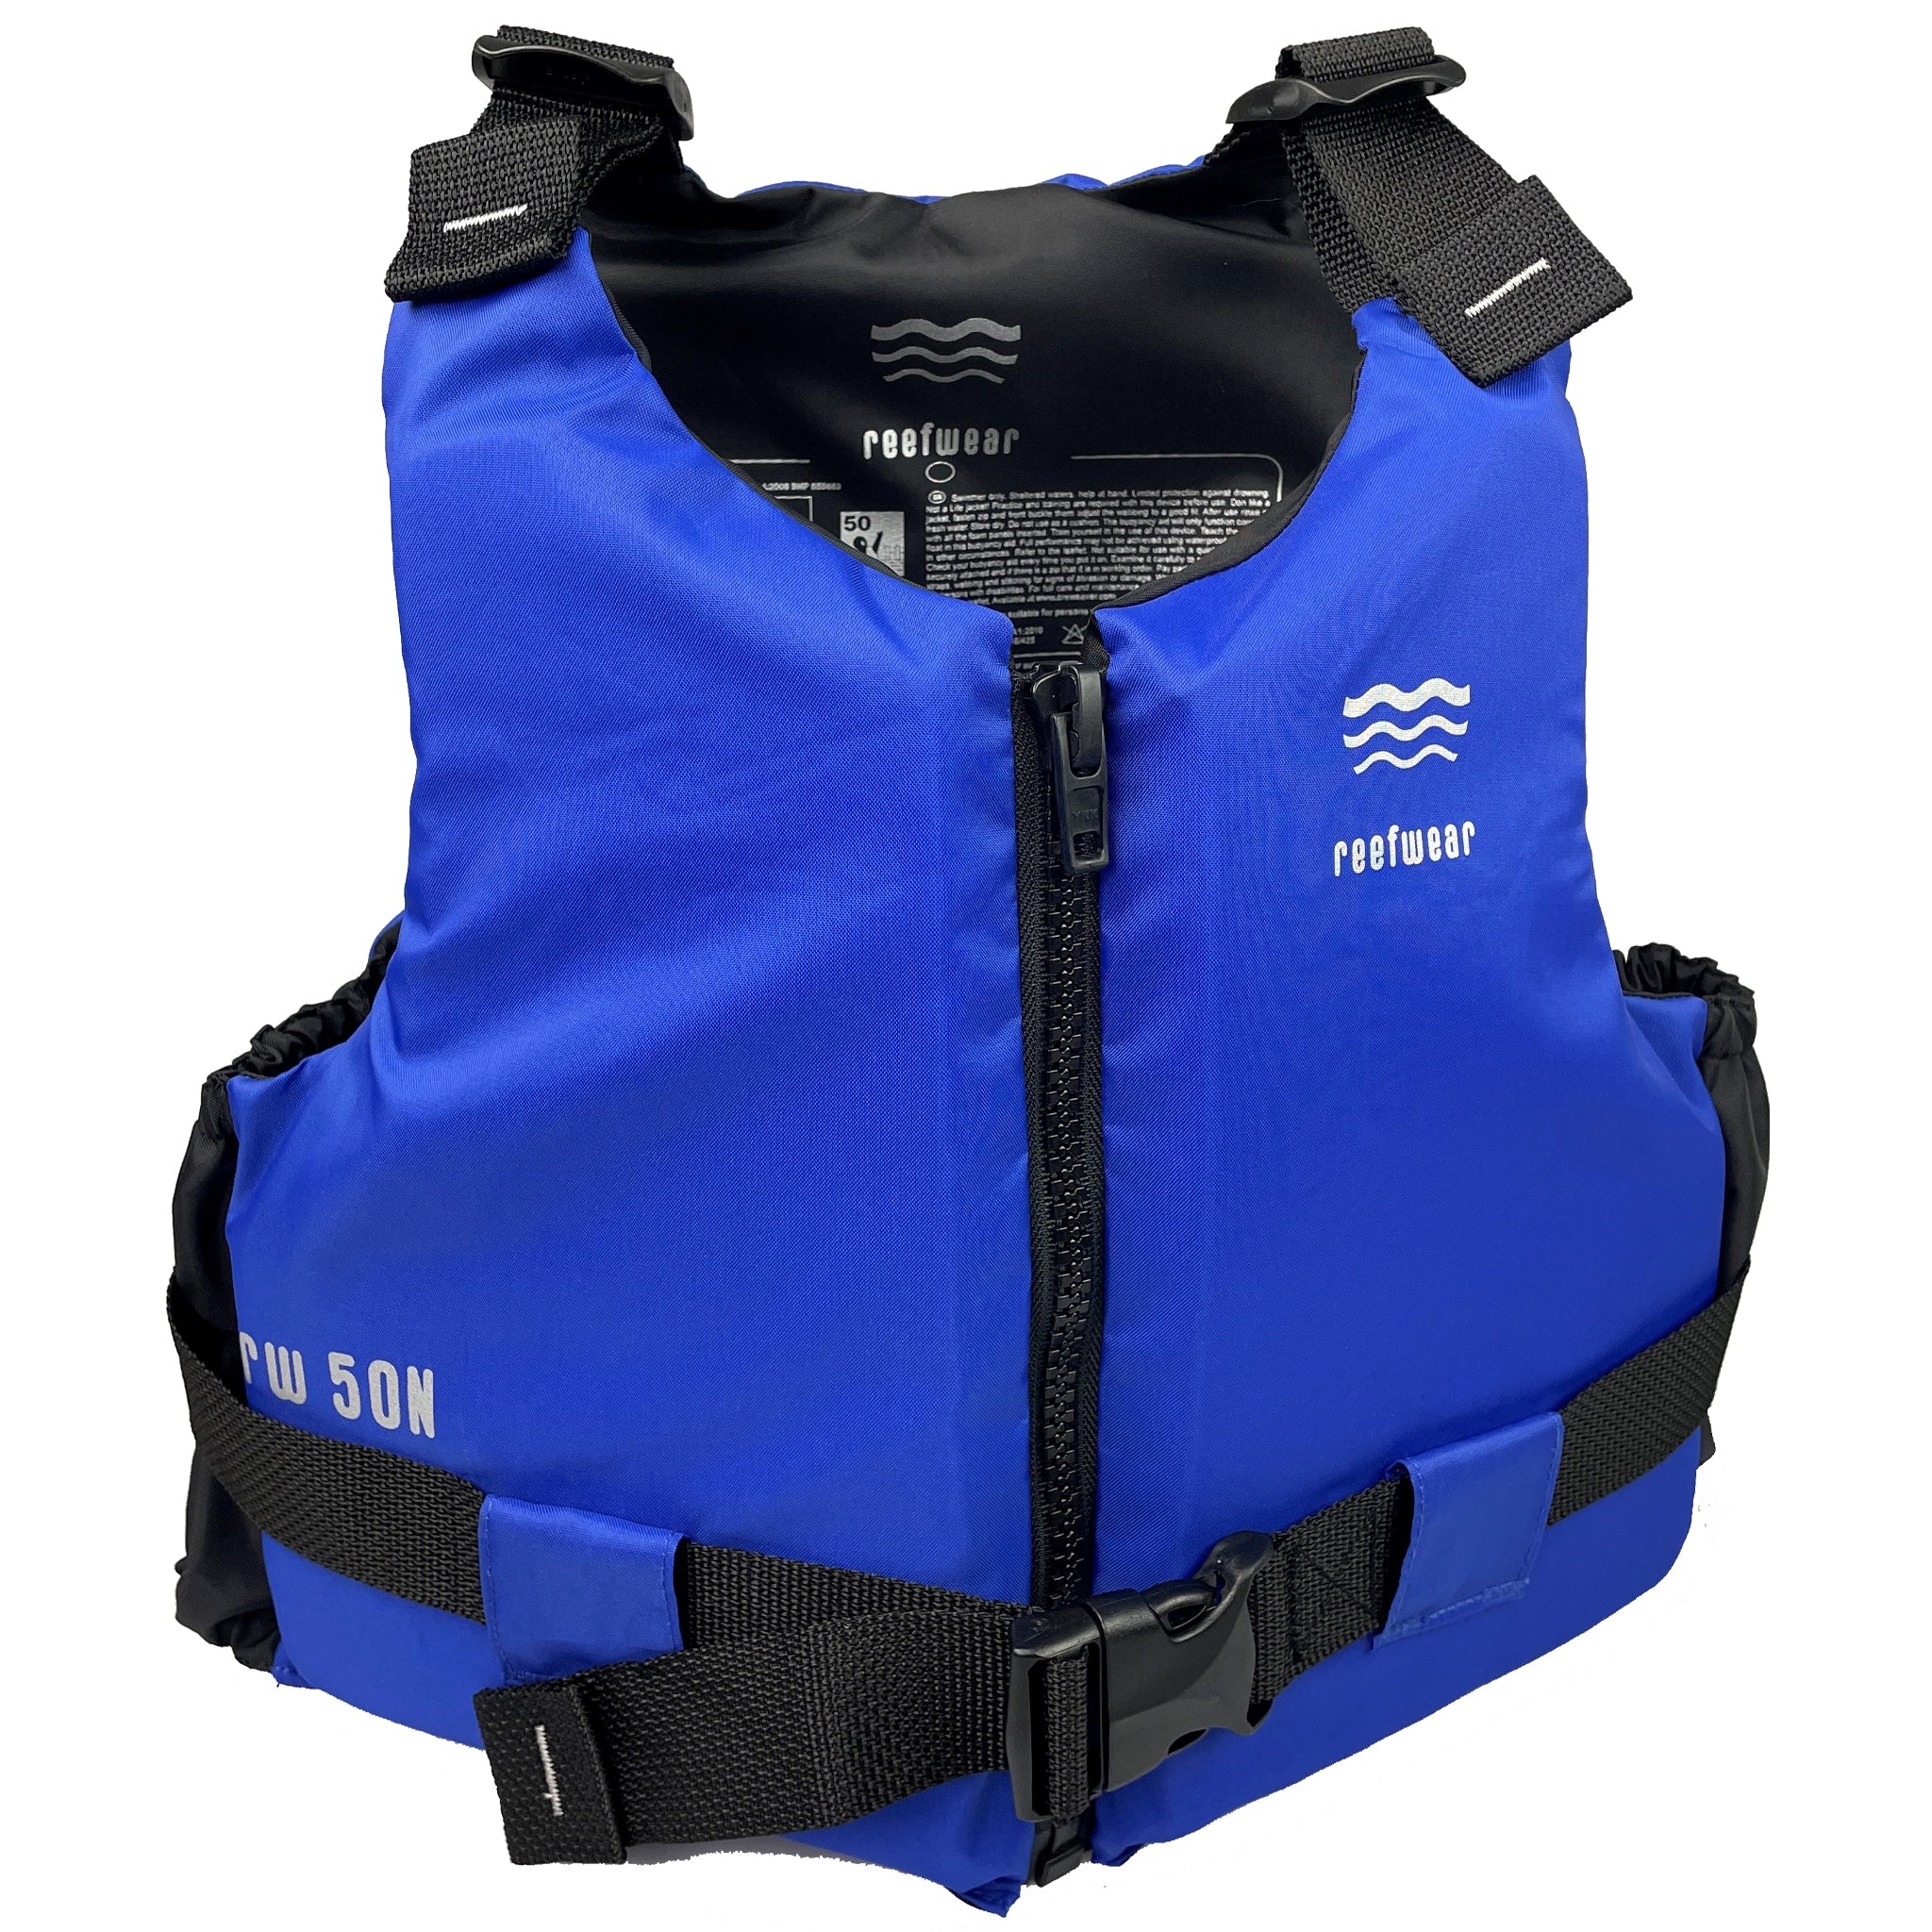 Reefwear Sport 50N Junior Buoyancy Aid Blue